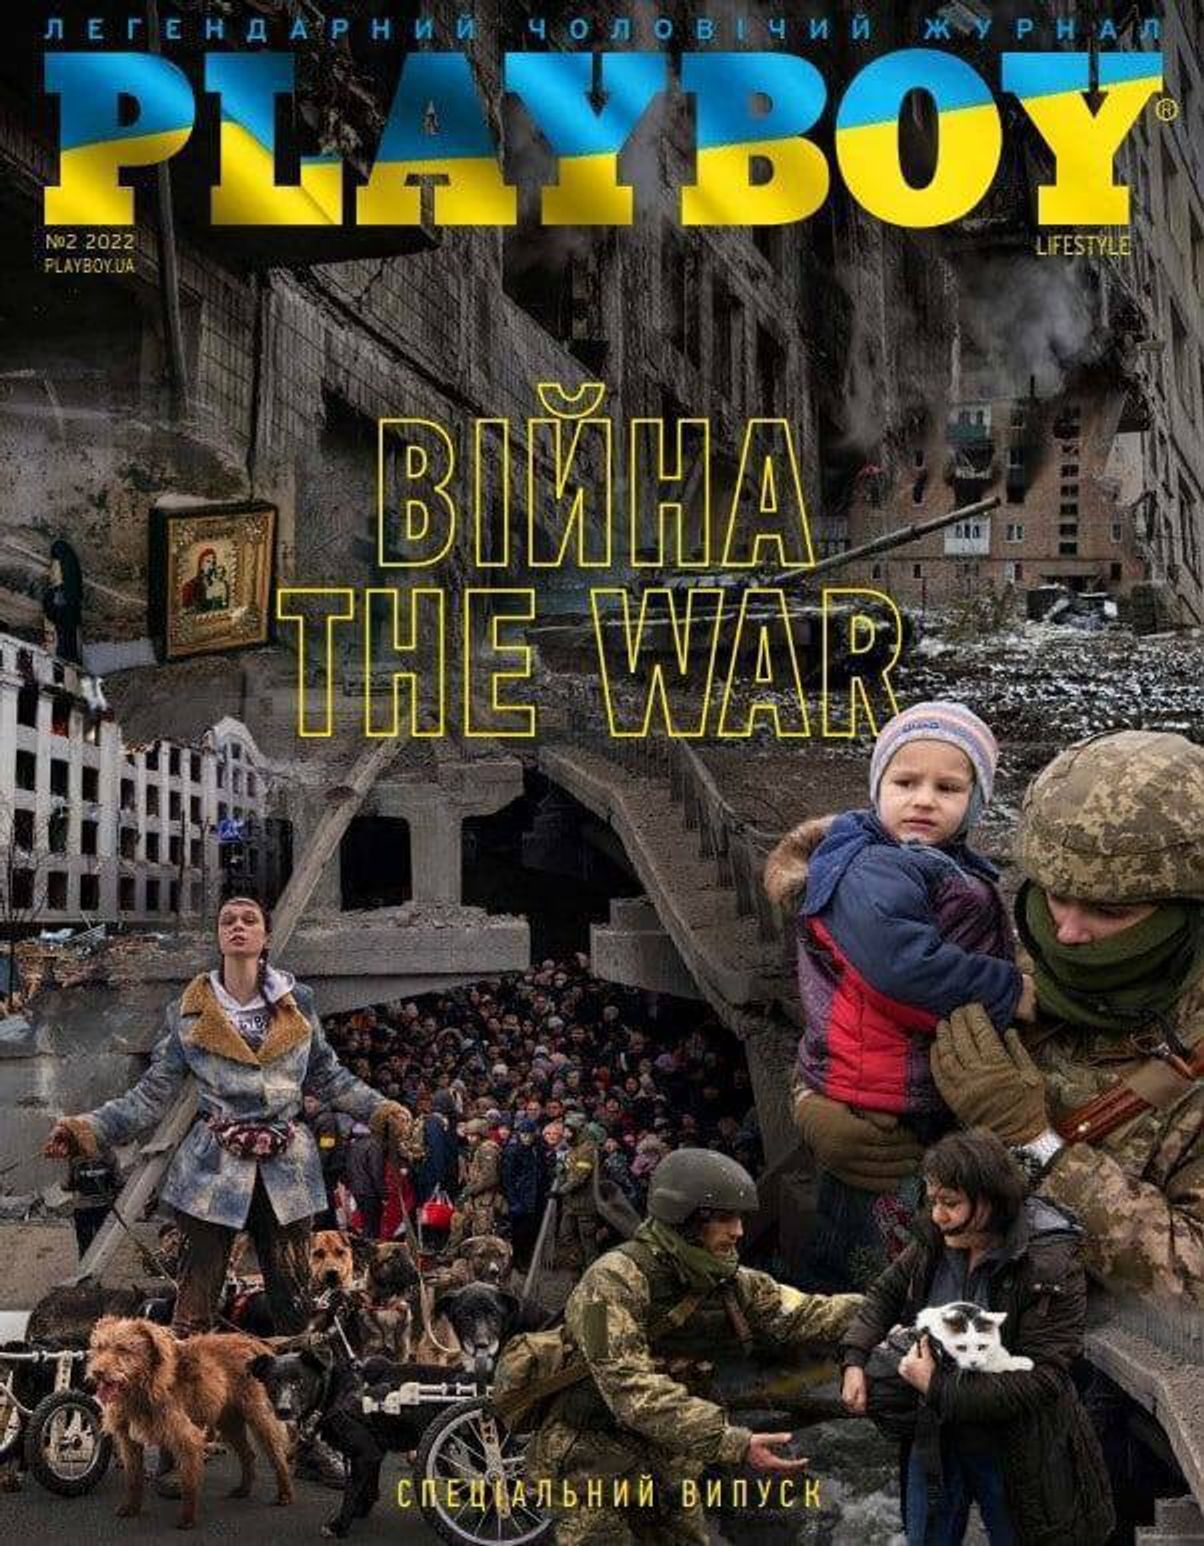 Украинская версия Playboy будет закрыта. Владелец: «Причина может быть в нашем выпуске о войне»